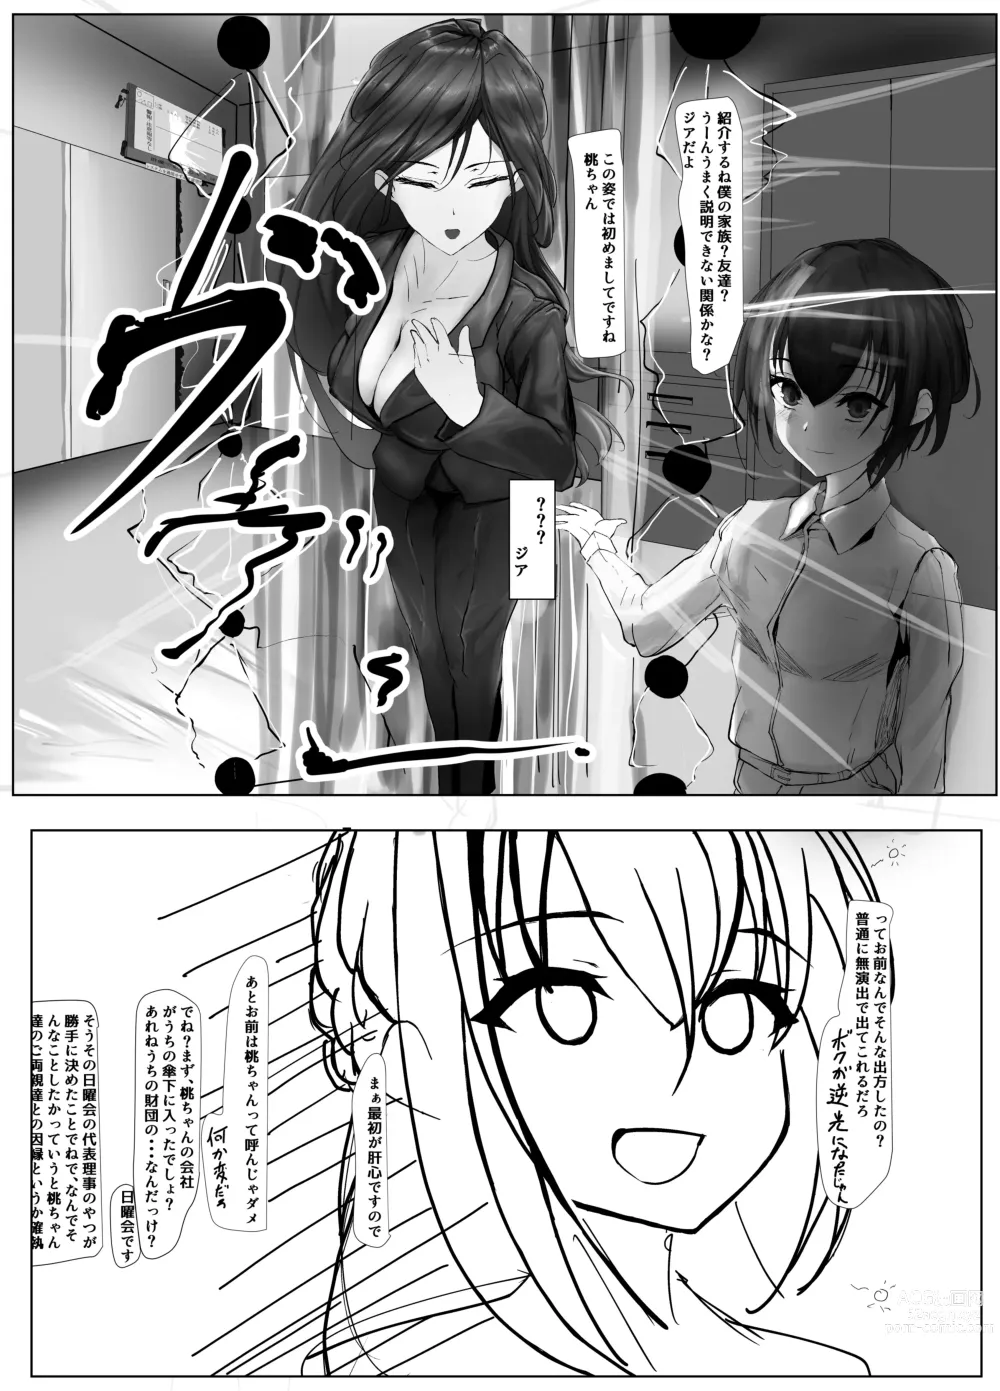 Page 12 of doujinshi Atarashii Kazoku ga Fuemashita!